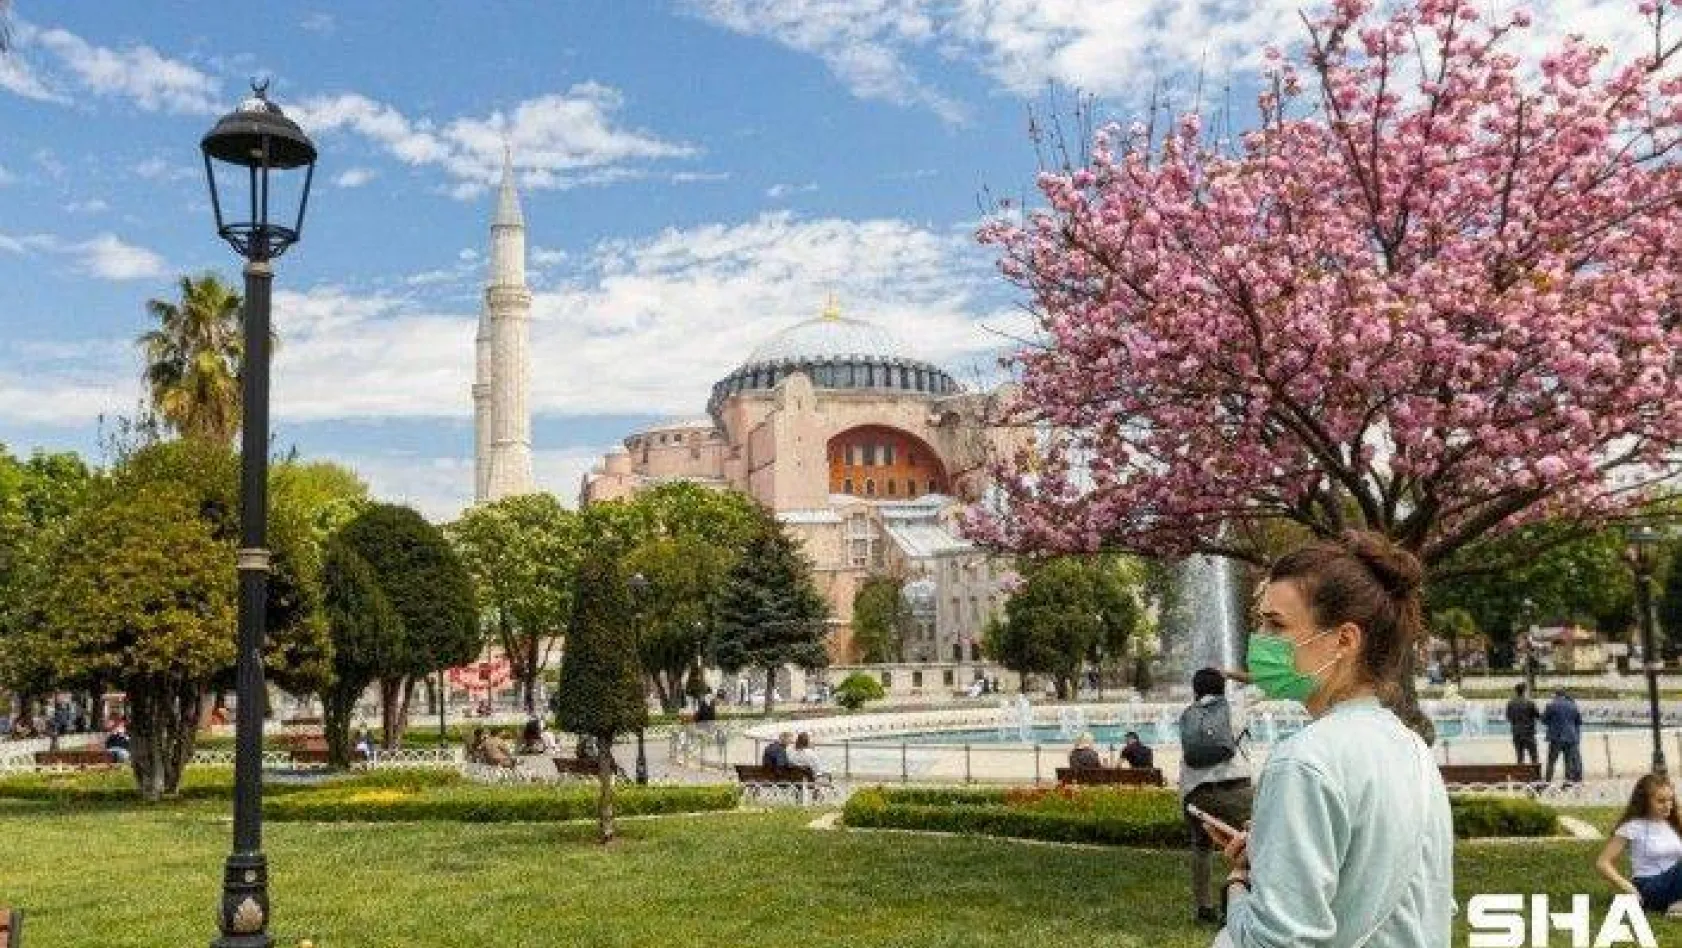 Vali Yerlikaya İstanbul'a Mart ayında gelen turist sayısını açıkladı